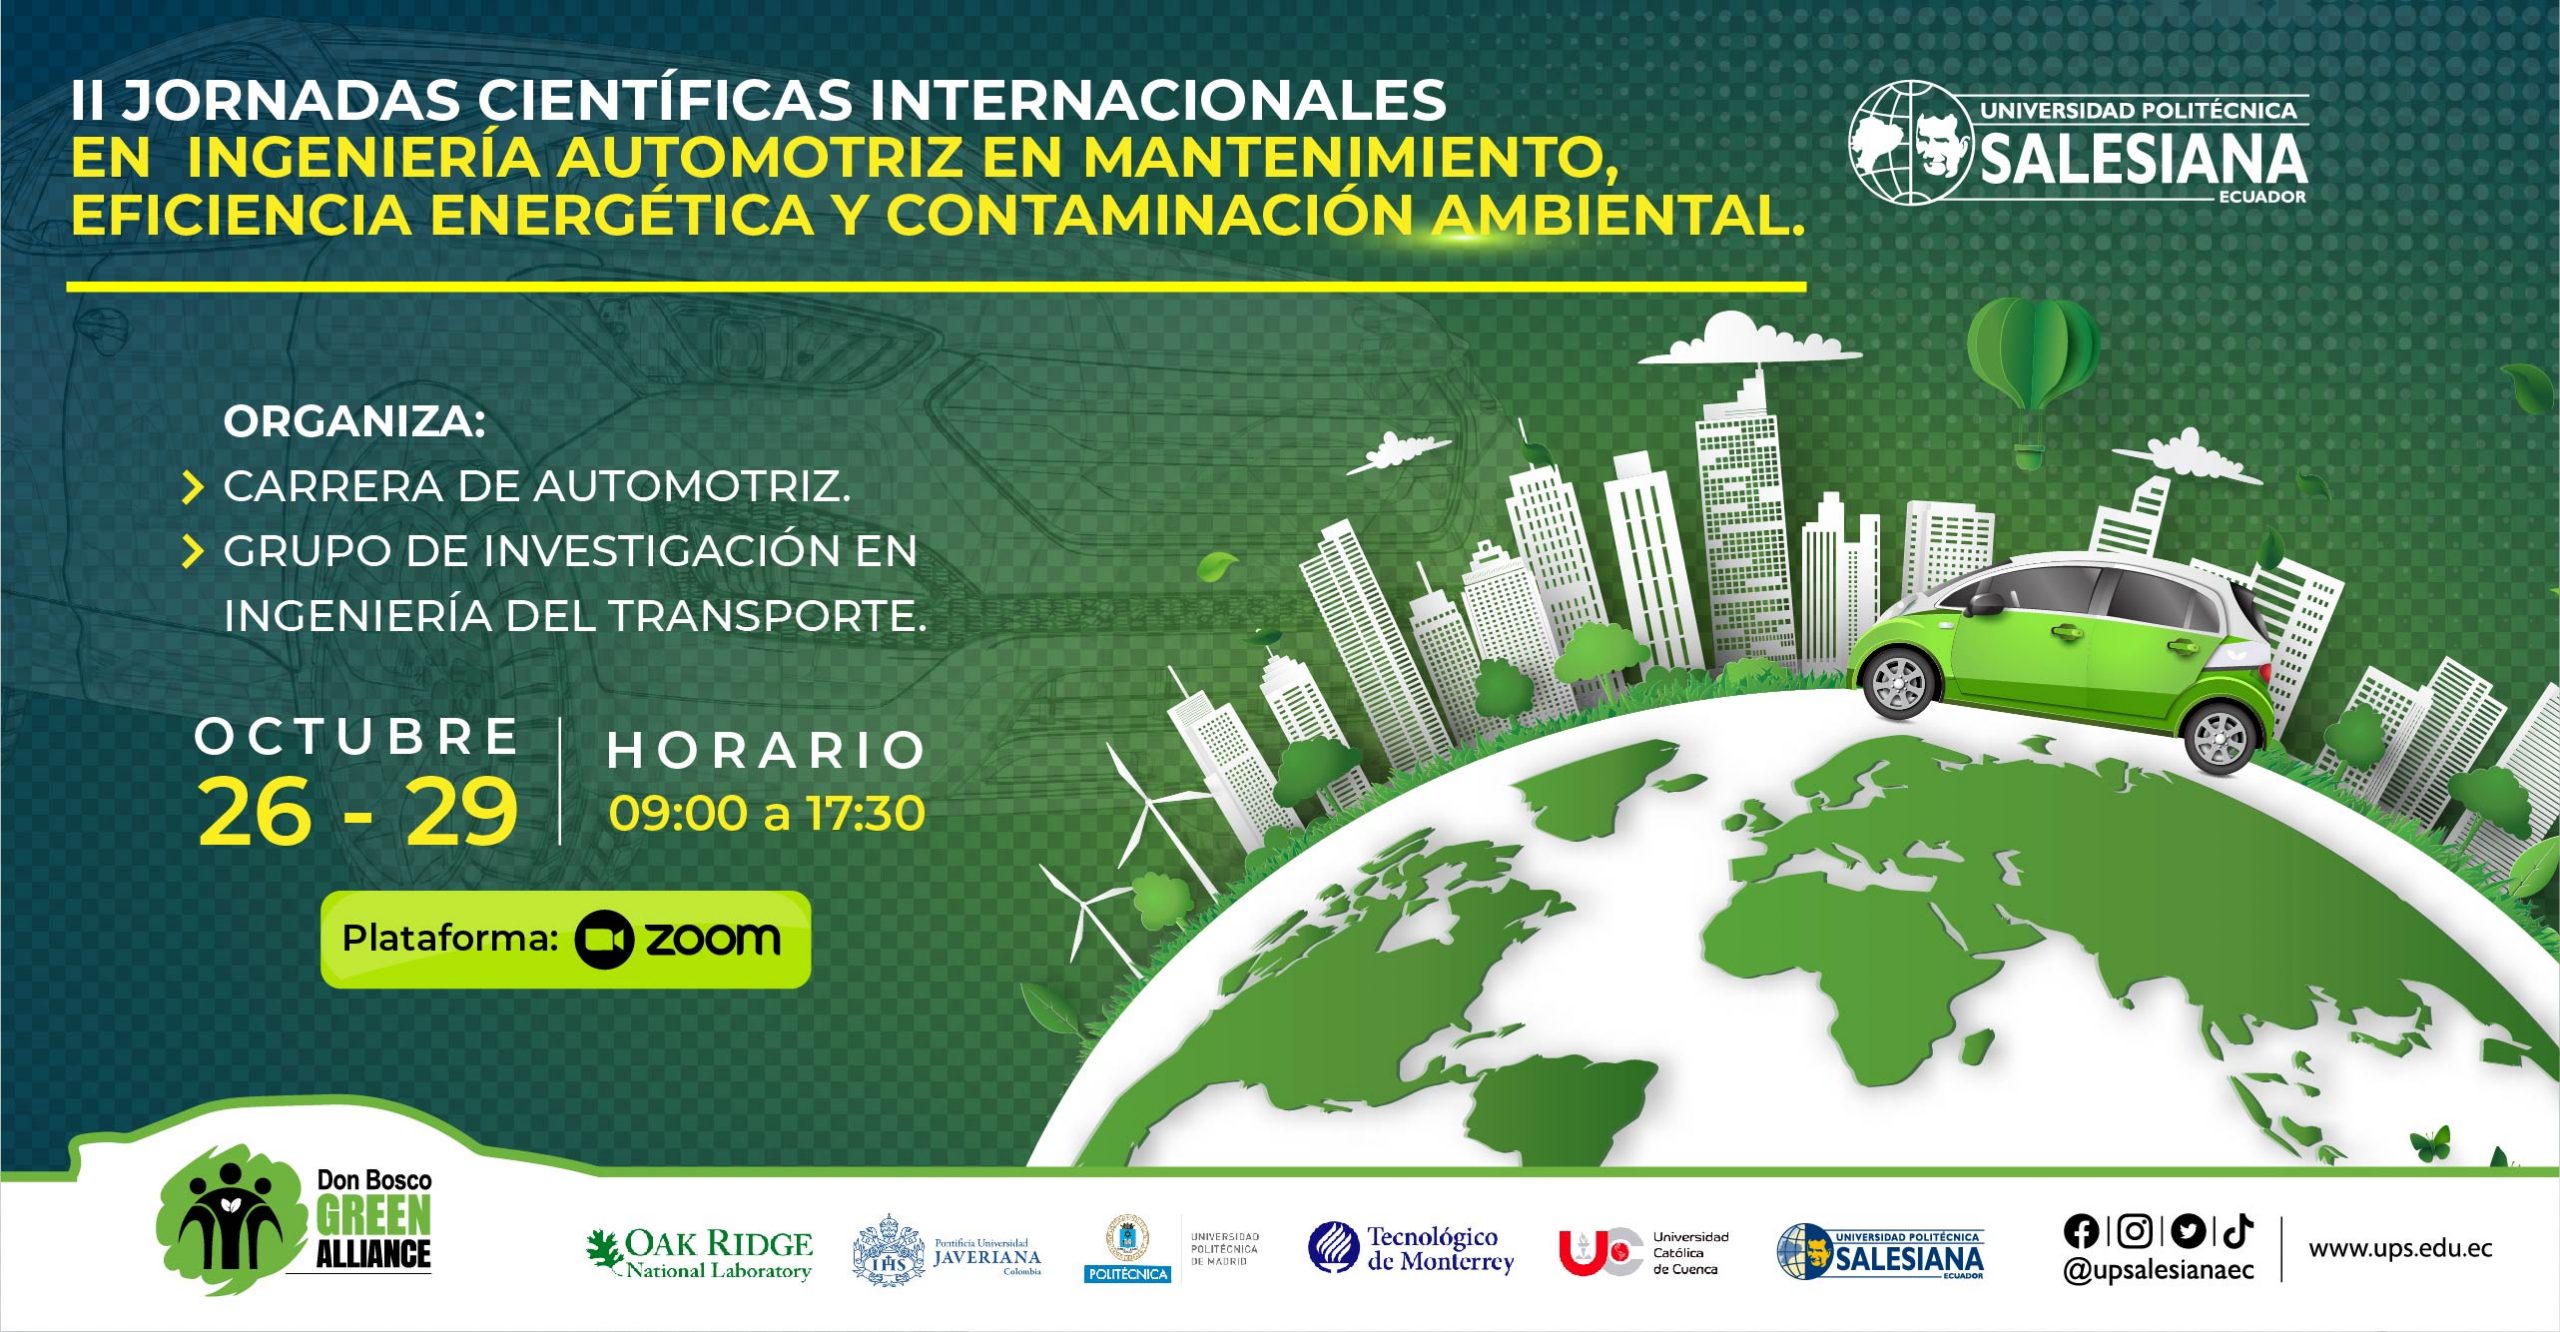 II Jornadas Científicas Internacionales en Ingeniería Automotriz en Mantenimiento, Eficiencia Energética y Contaminación Ambiental.